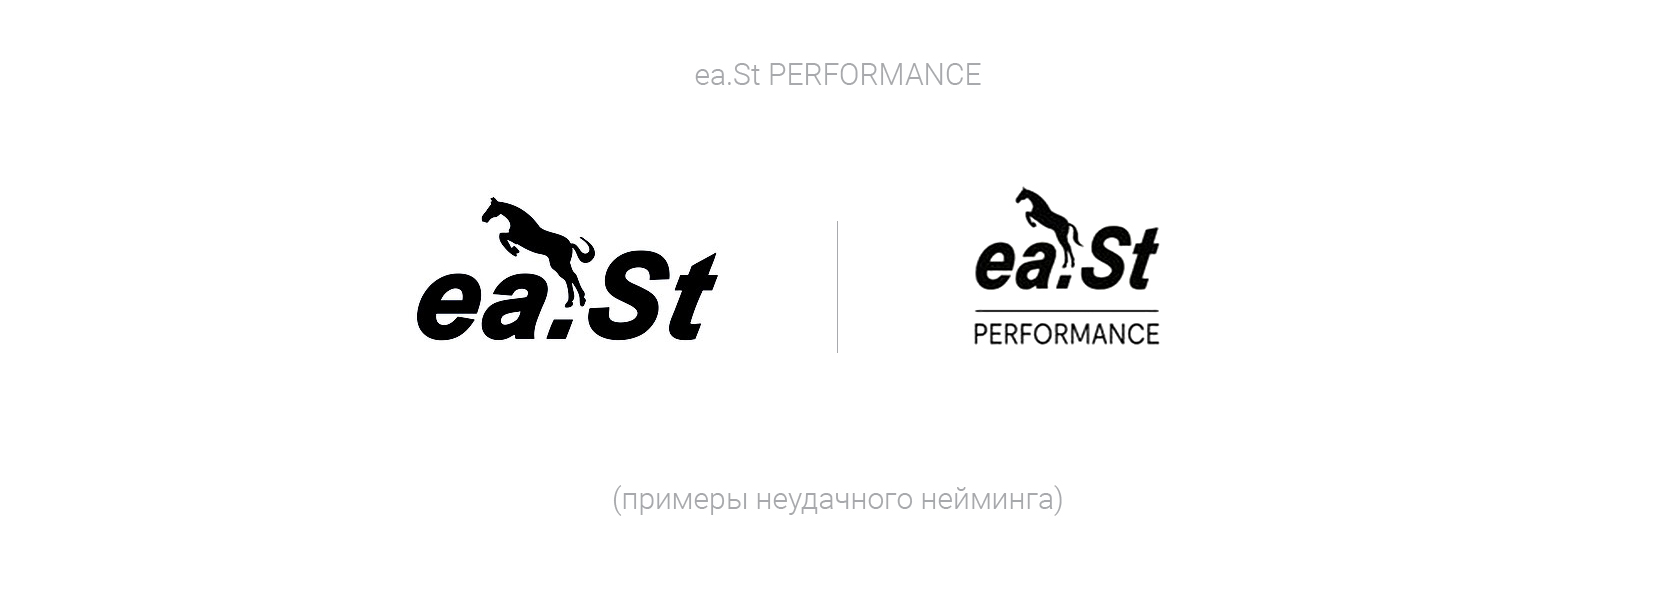 ea.St PERFORMANCE лого, пример неудачного нейминга